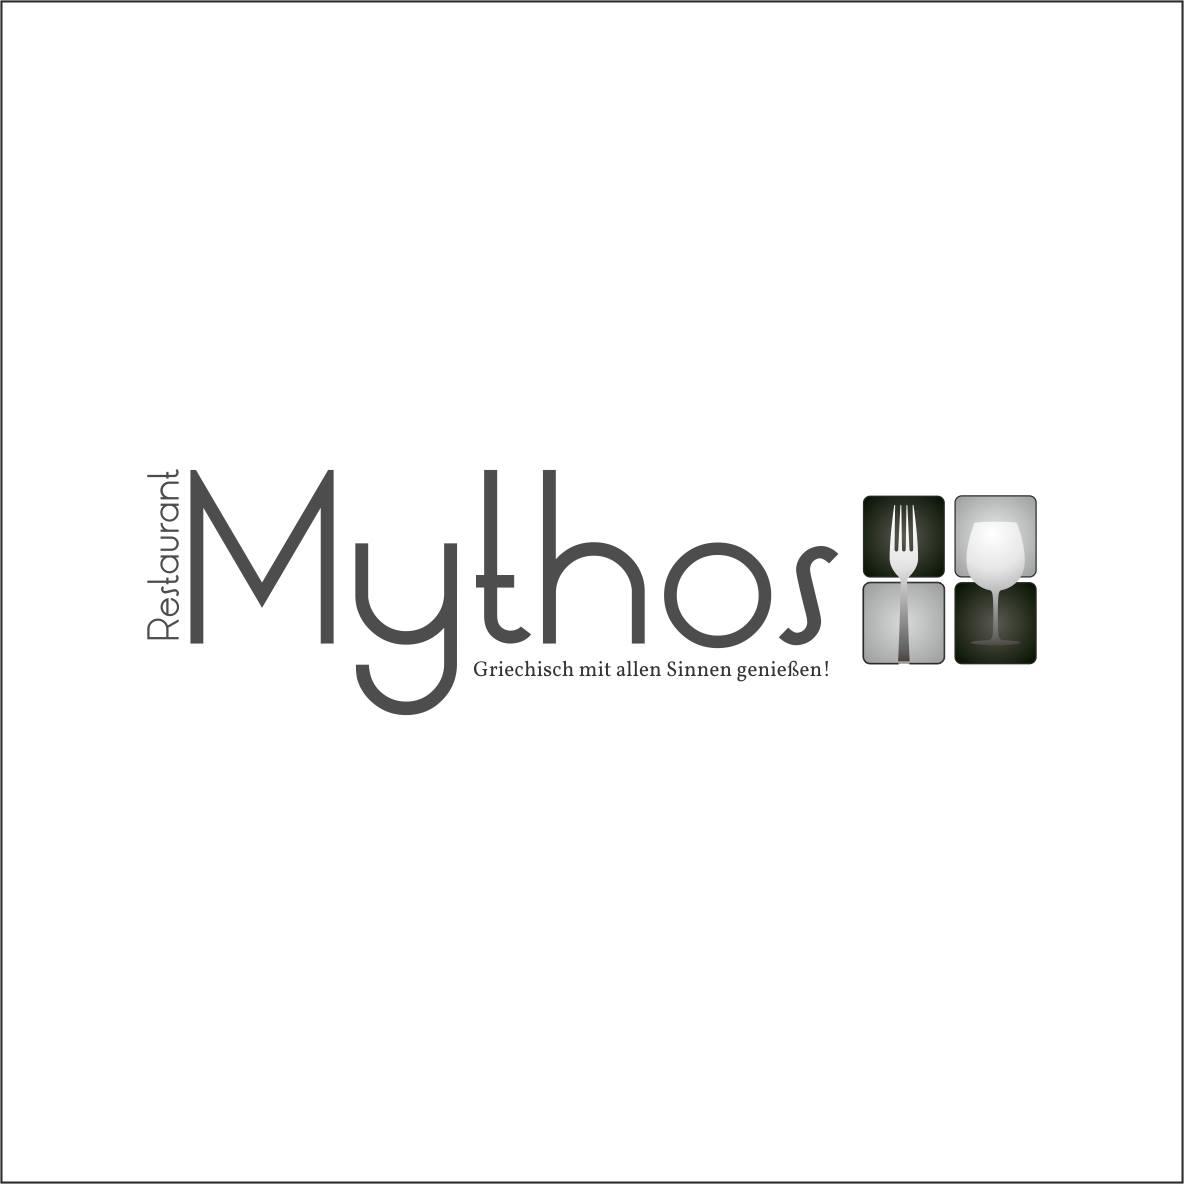 Restaurant Mythos Logo